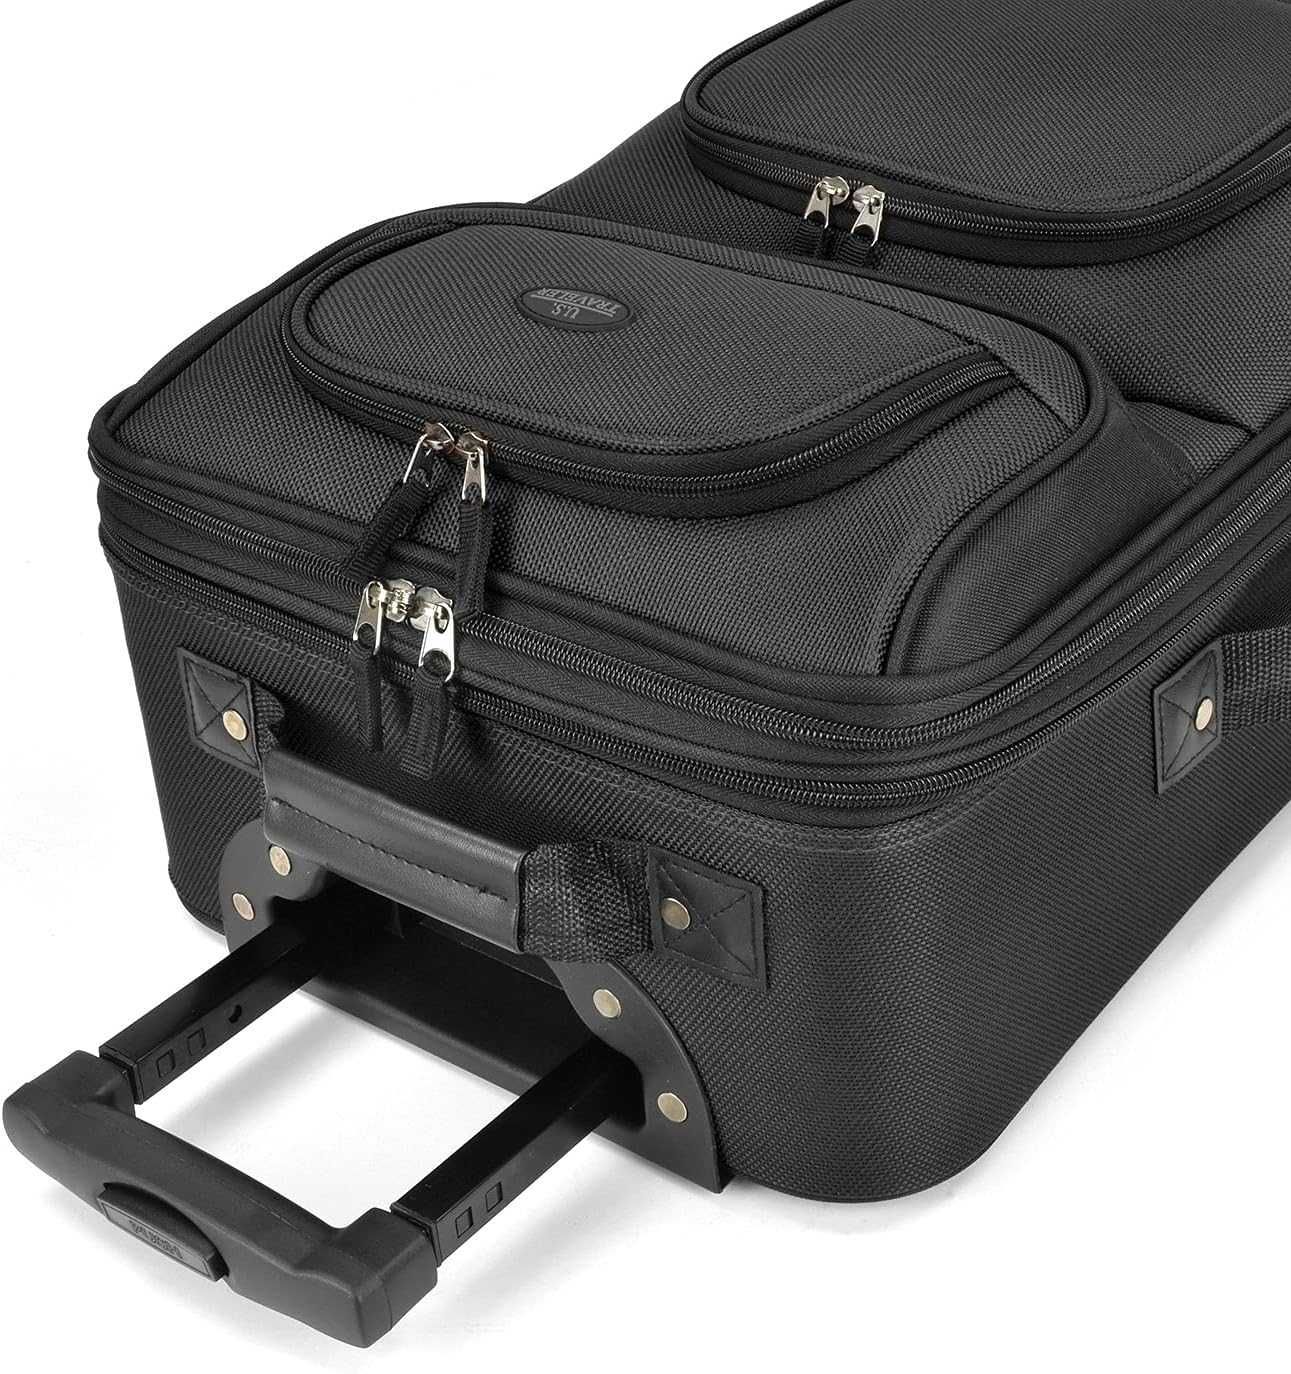 Набір  : чемодан і сумка U.S. Traveler. Куплені в США. Оригінал